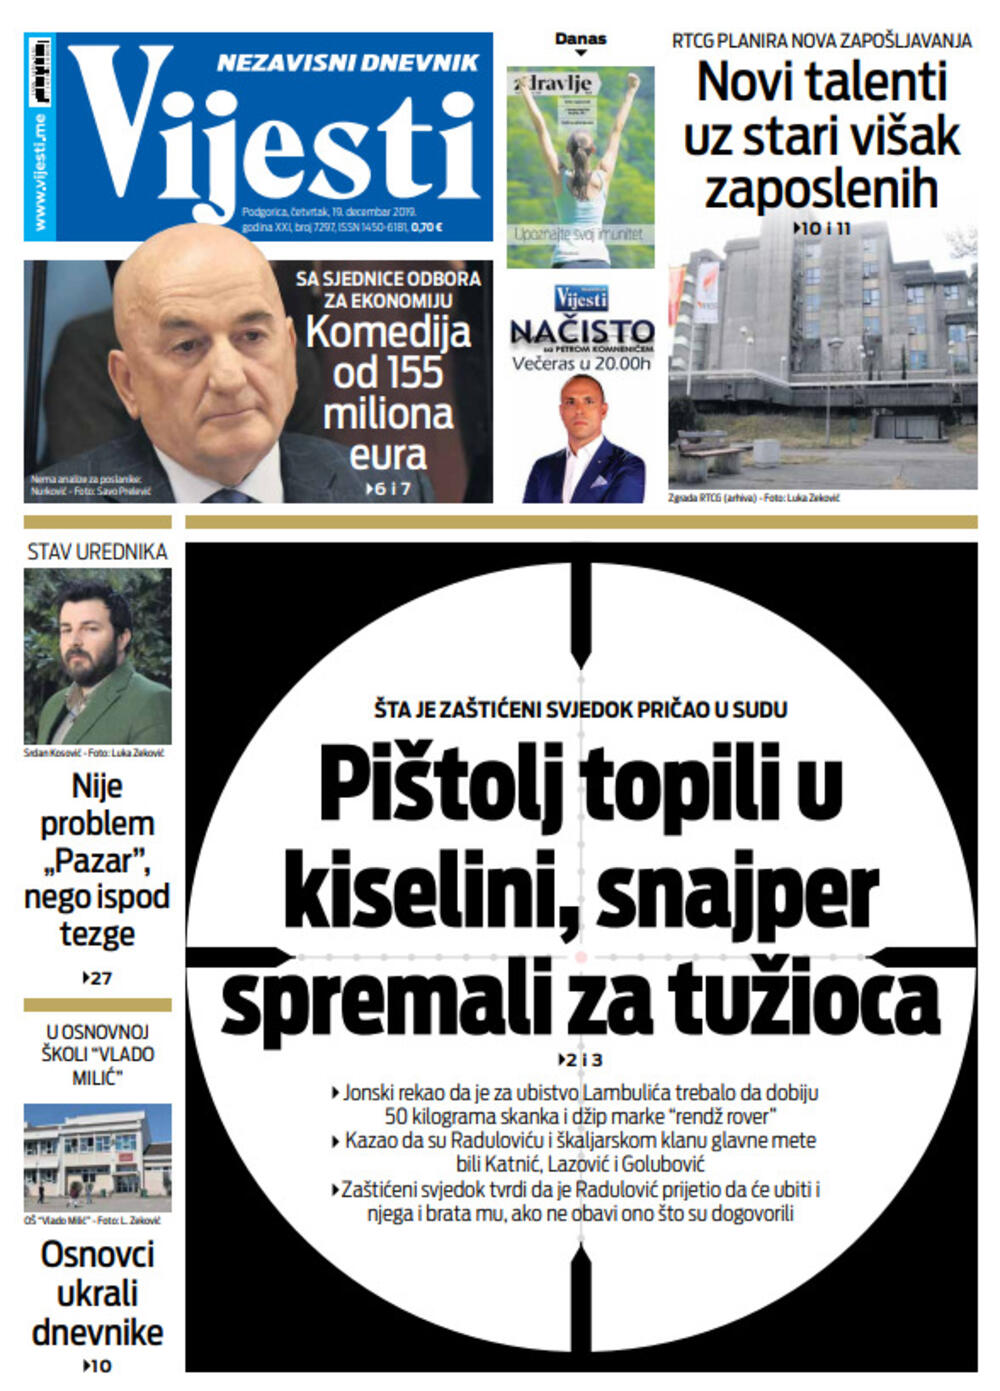 Naslovna strana "Vijesti" 19.12., Foto: Vijesti